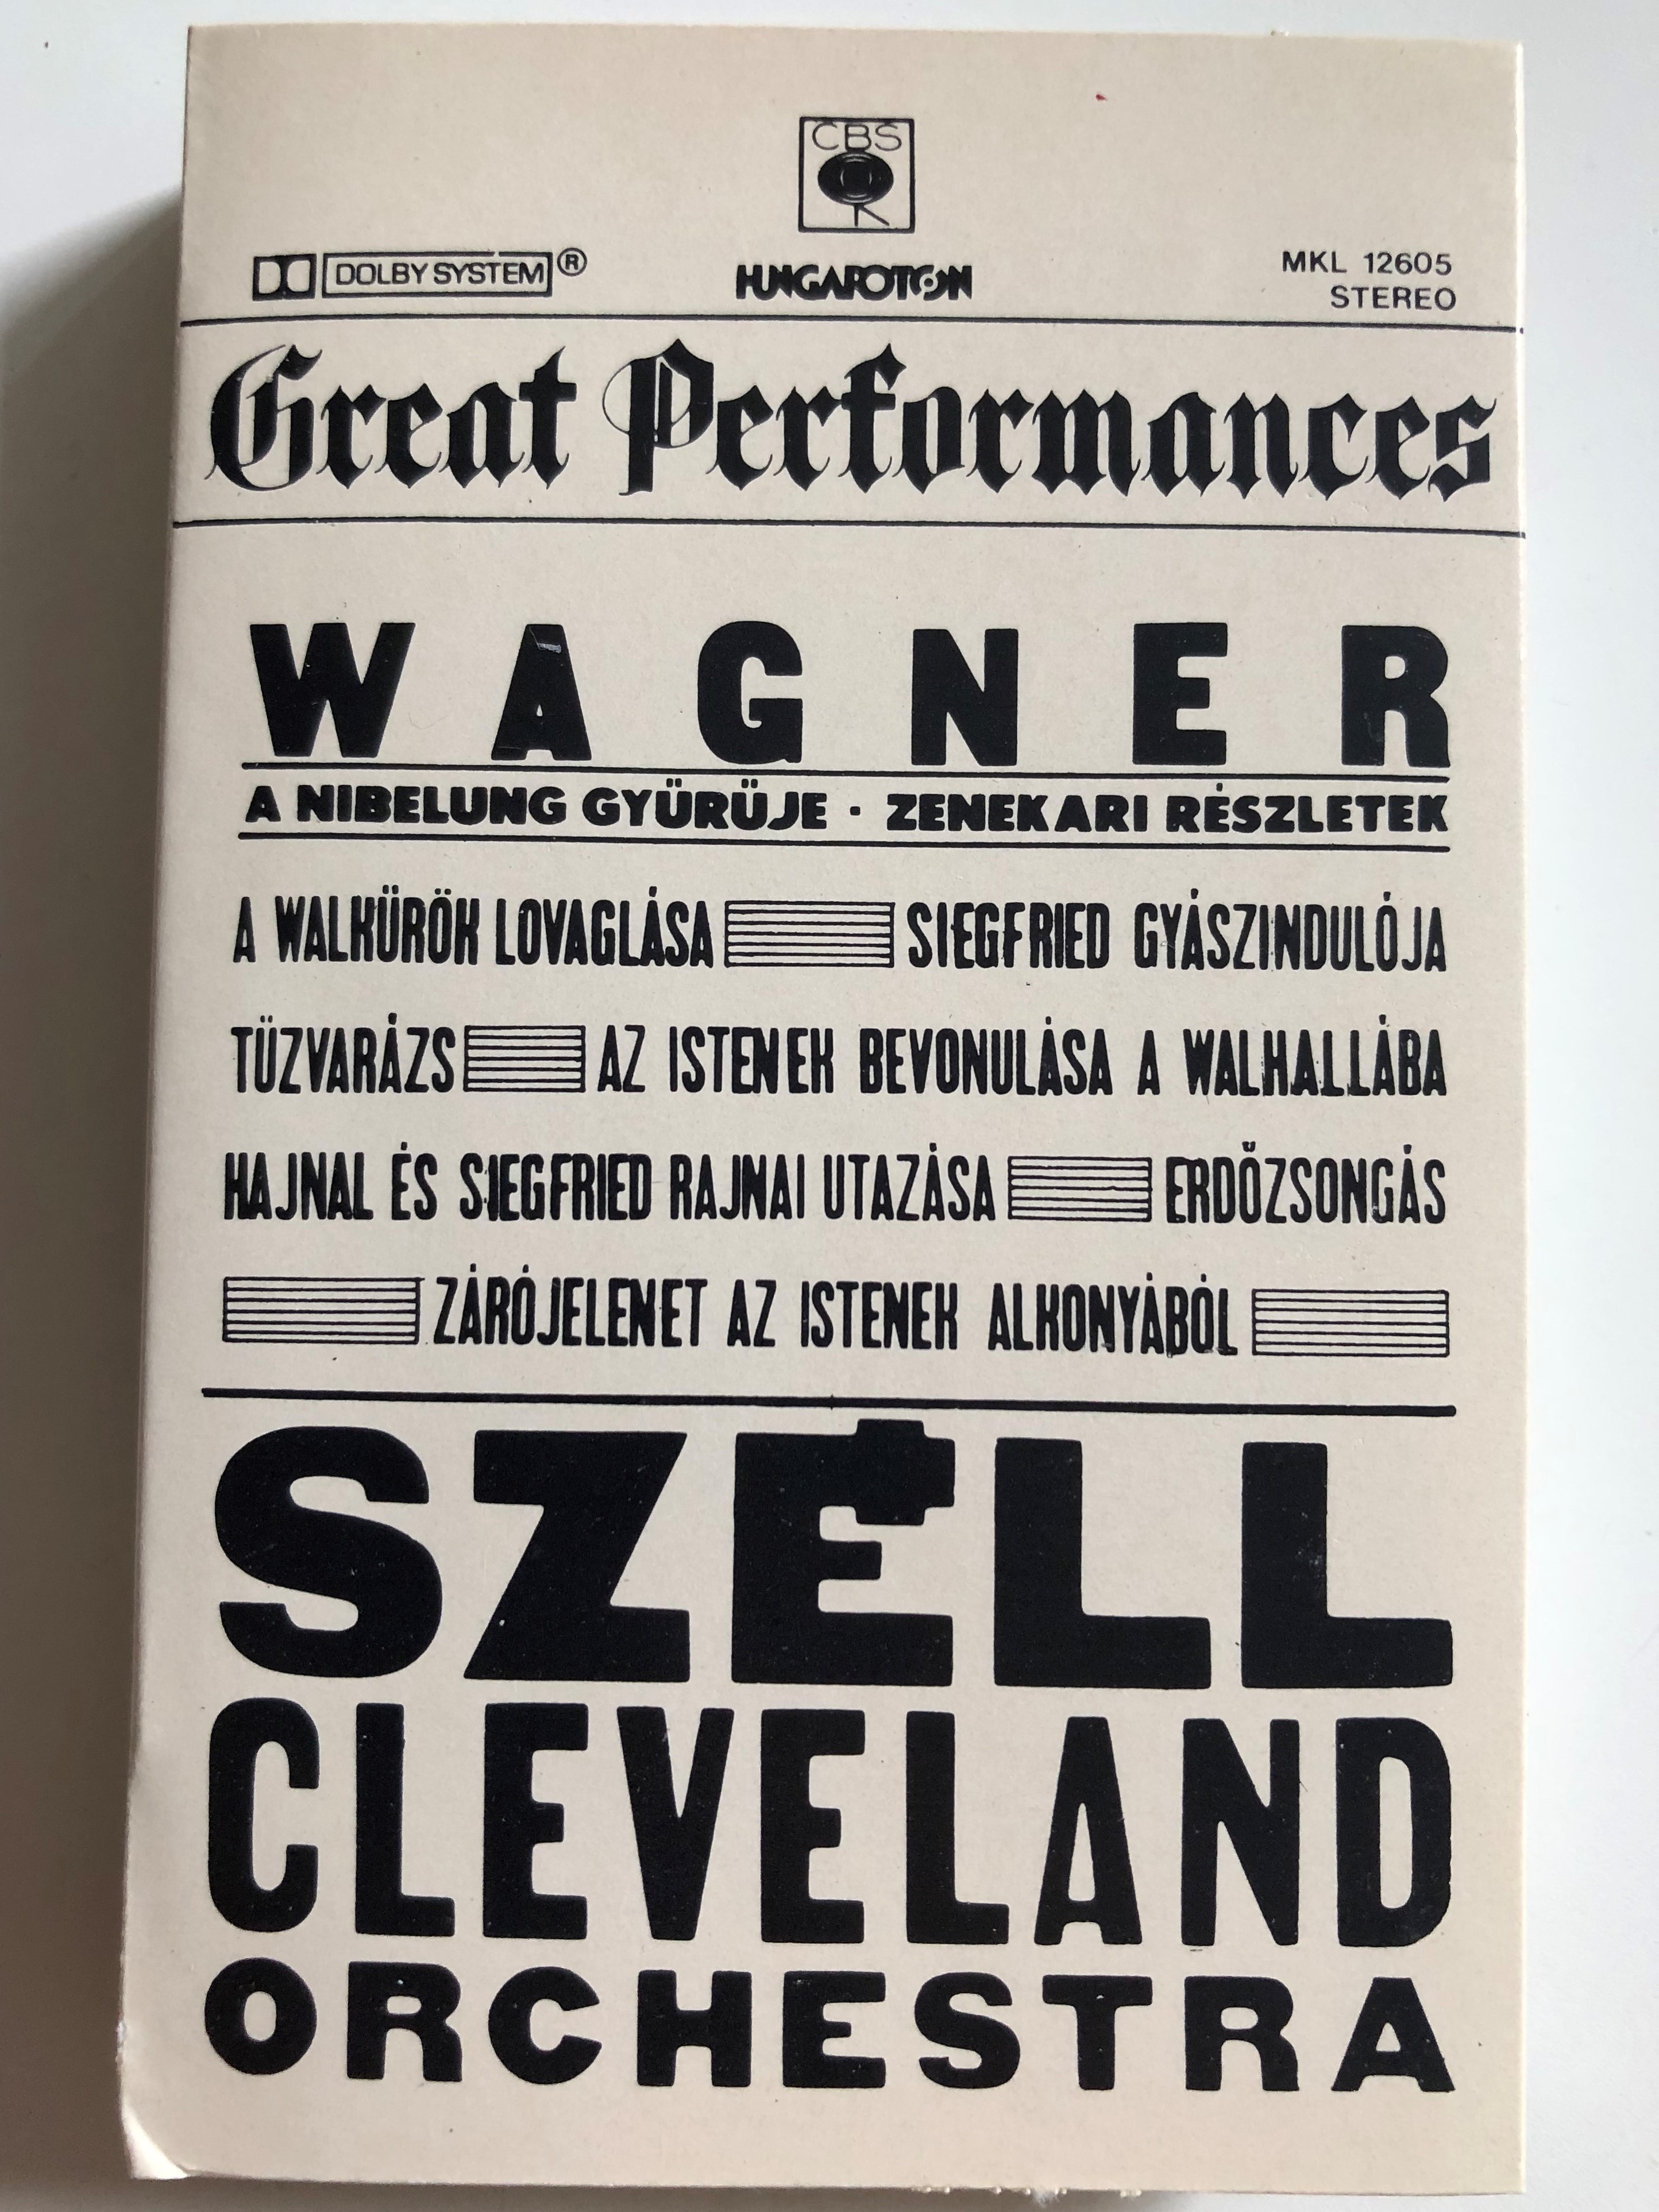 Great Performances / Wagner - A Nibelung Gyürüje, Zenekari Részletek /  Széll, Cleveland Orchestra / HUNGAROTON CASSETTE STEREO / MKL 12605 -  bibleinmylanguage